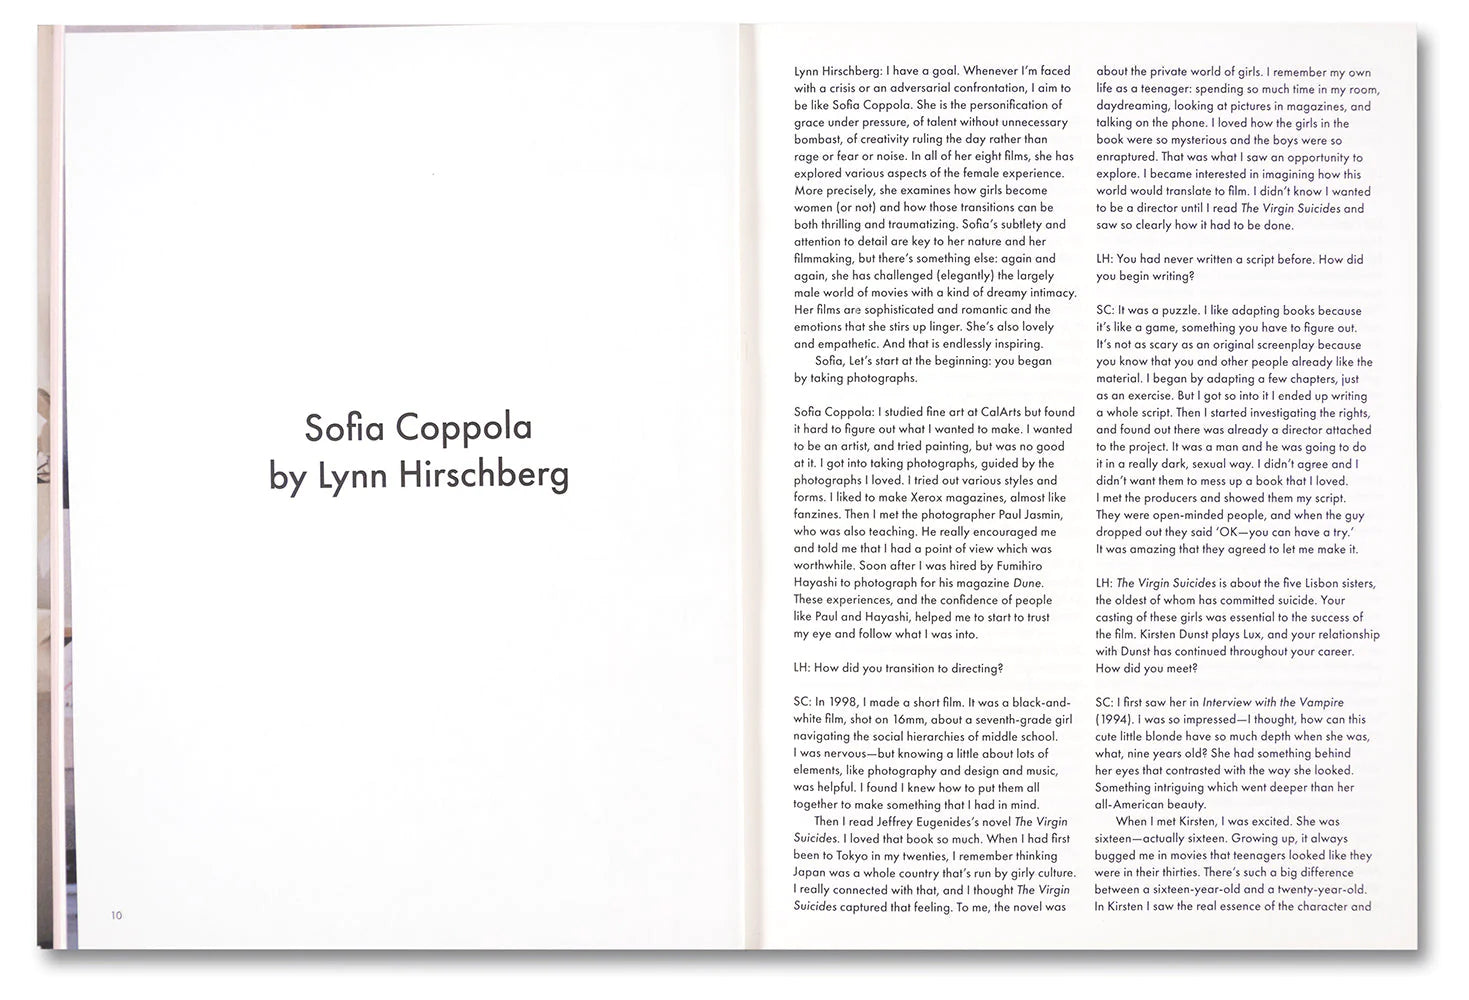 Sofia Coppola Archive Blu-Ray (Concept) Box Set by covercollector